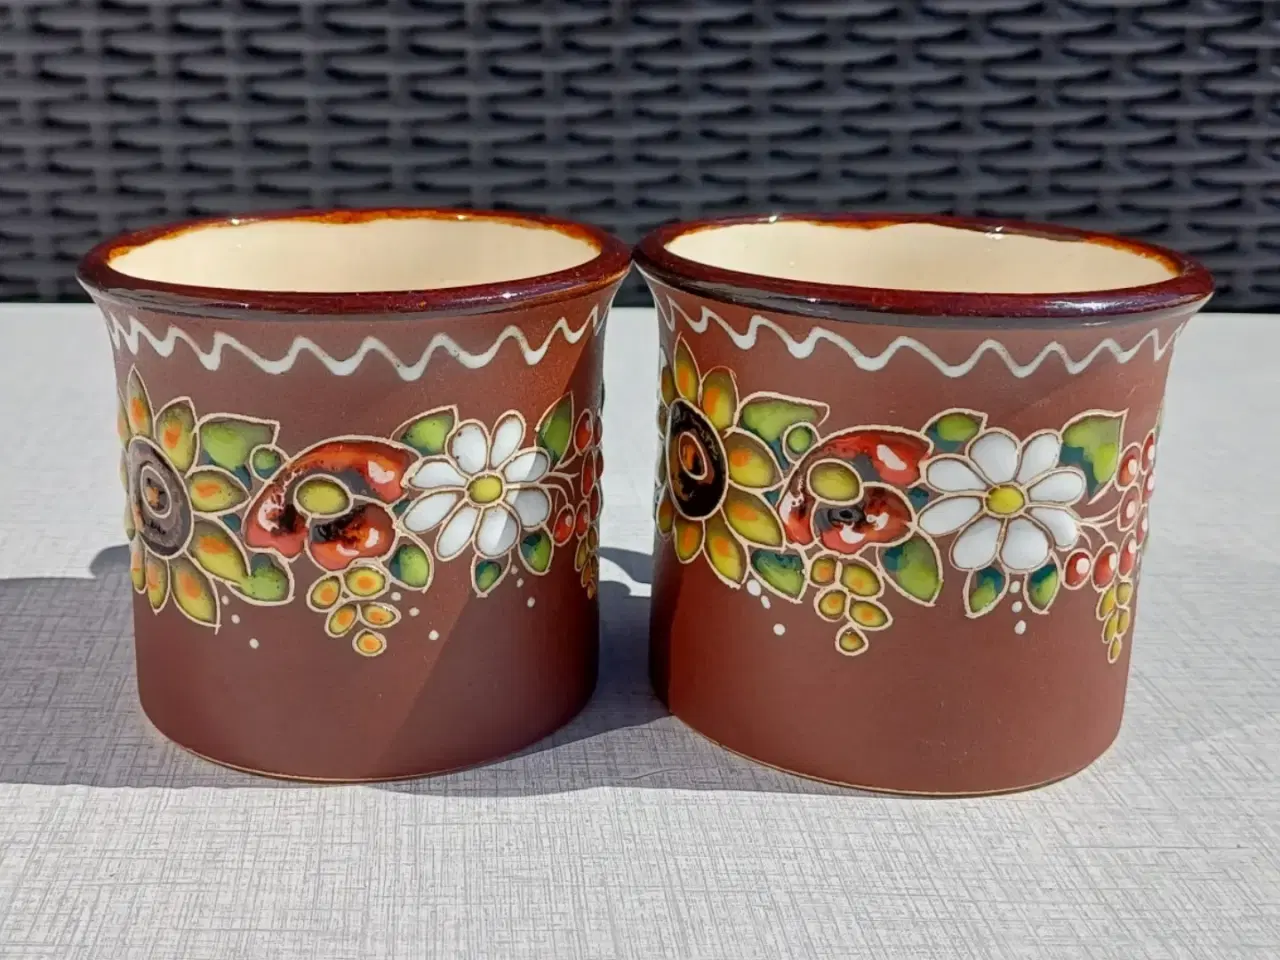 Billede 2 - To håndmalede kopper i keramik. Blomstermotiv.